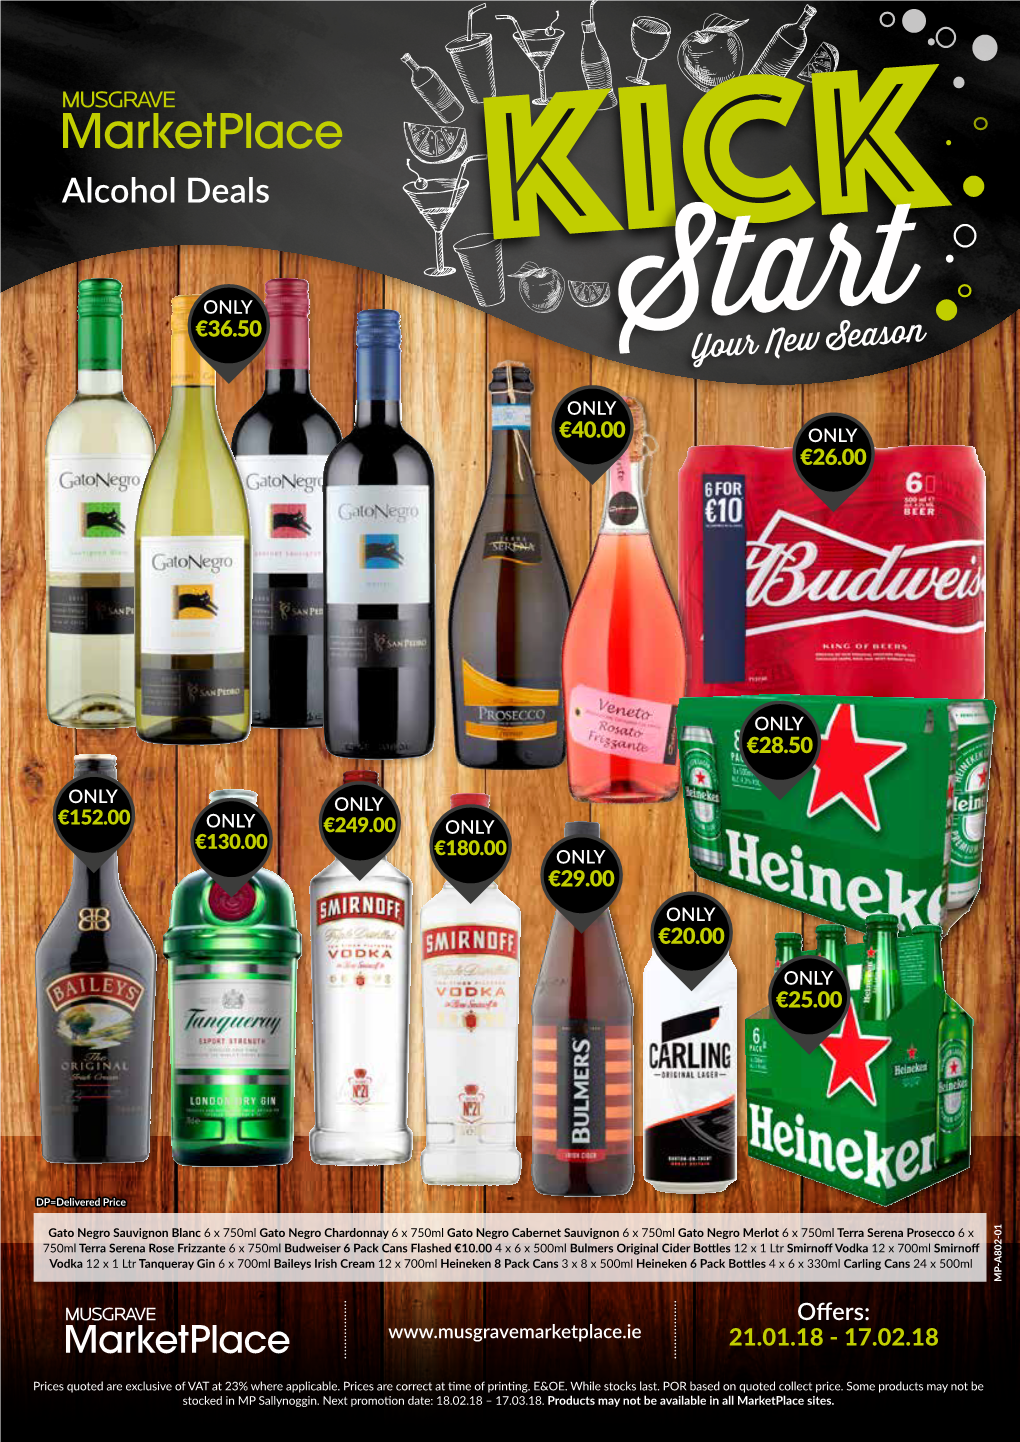 Alcohol Deals KICK ONLY €36.50 Start